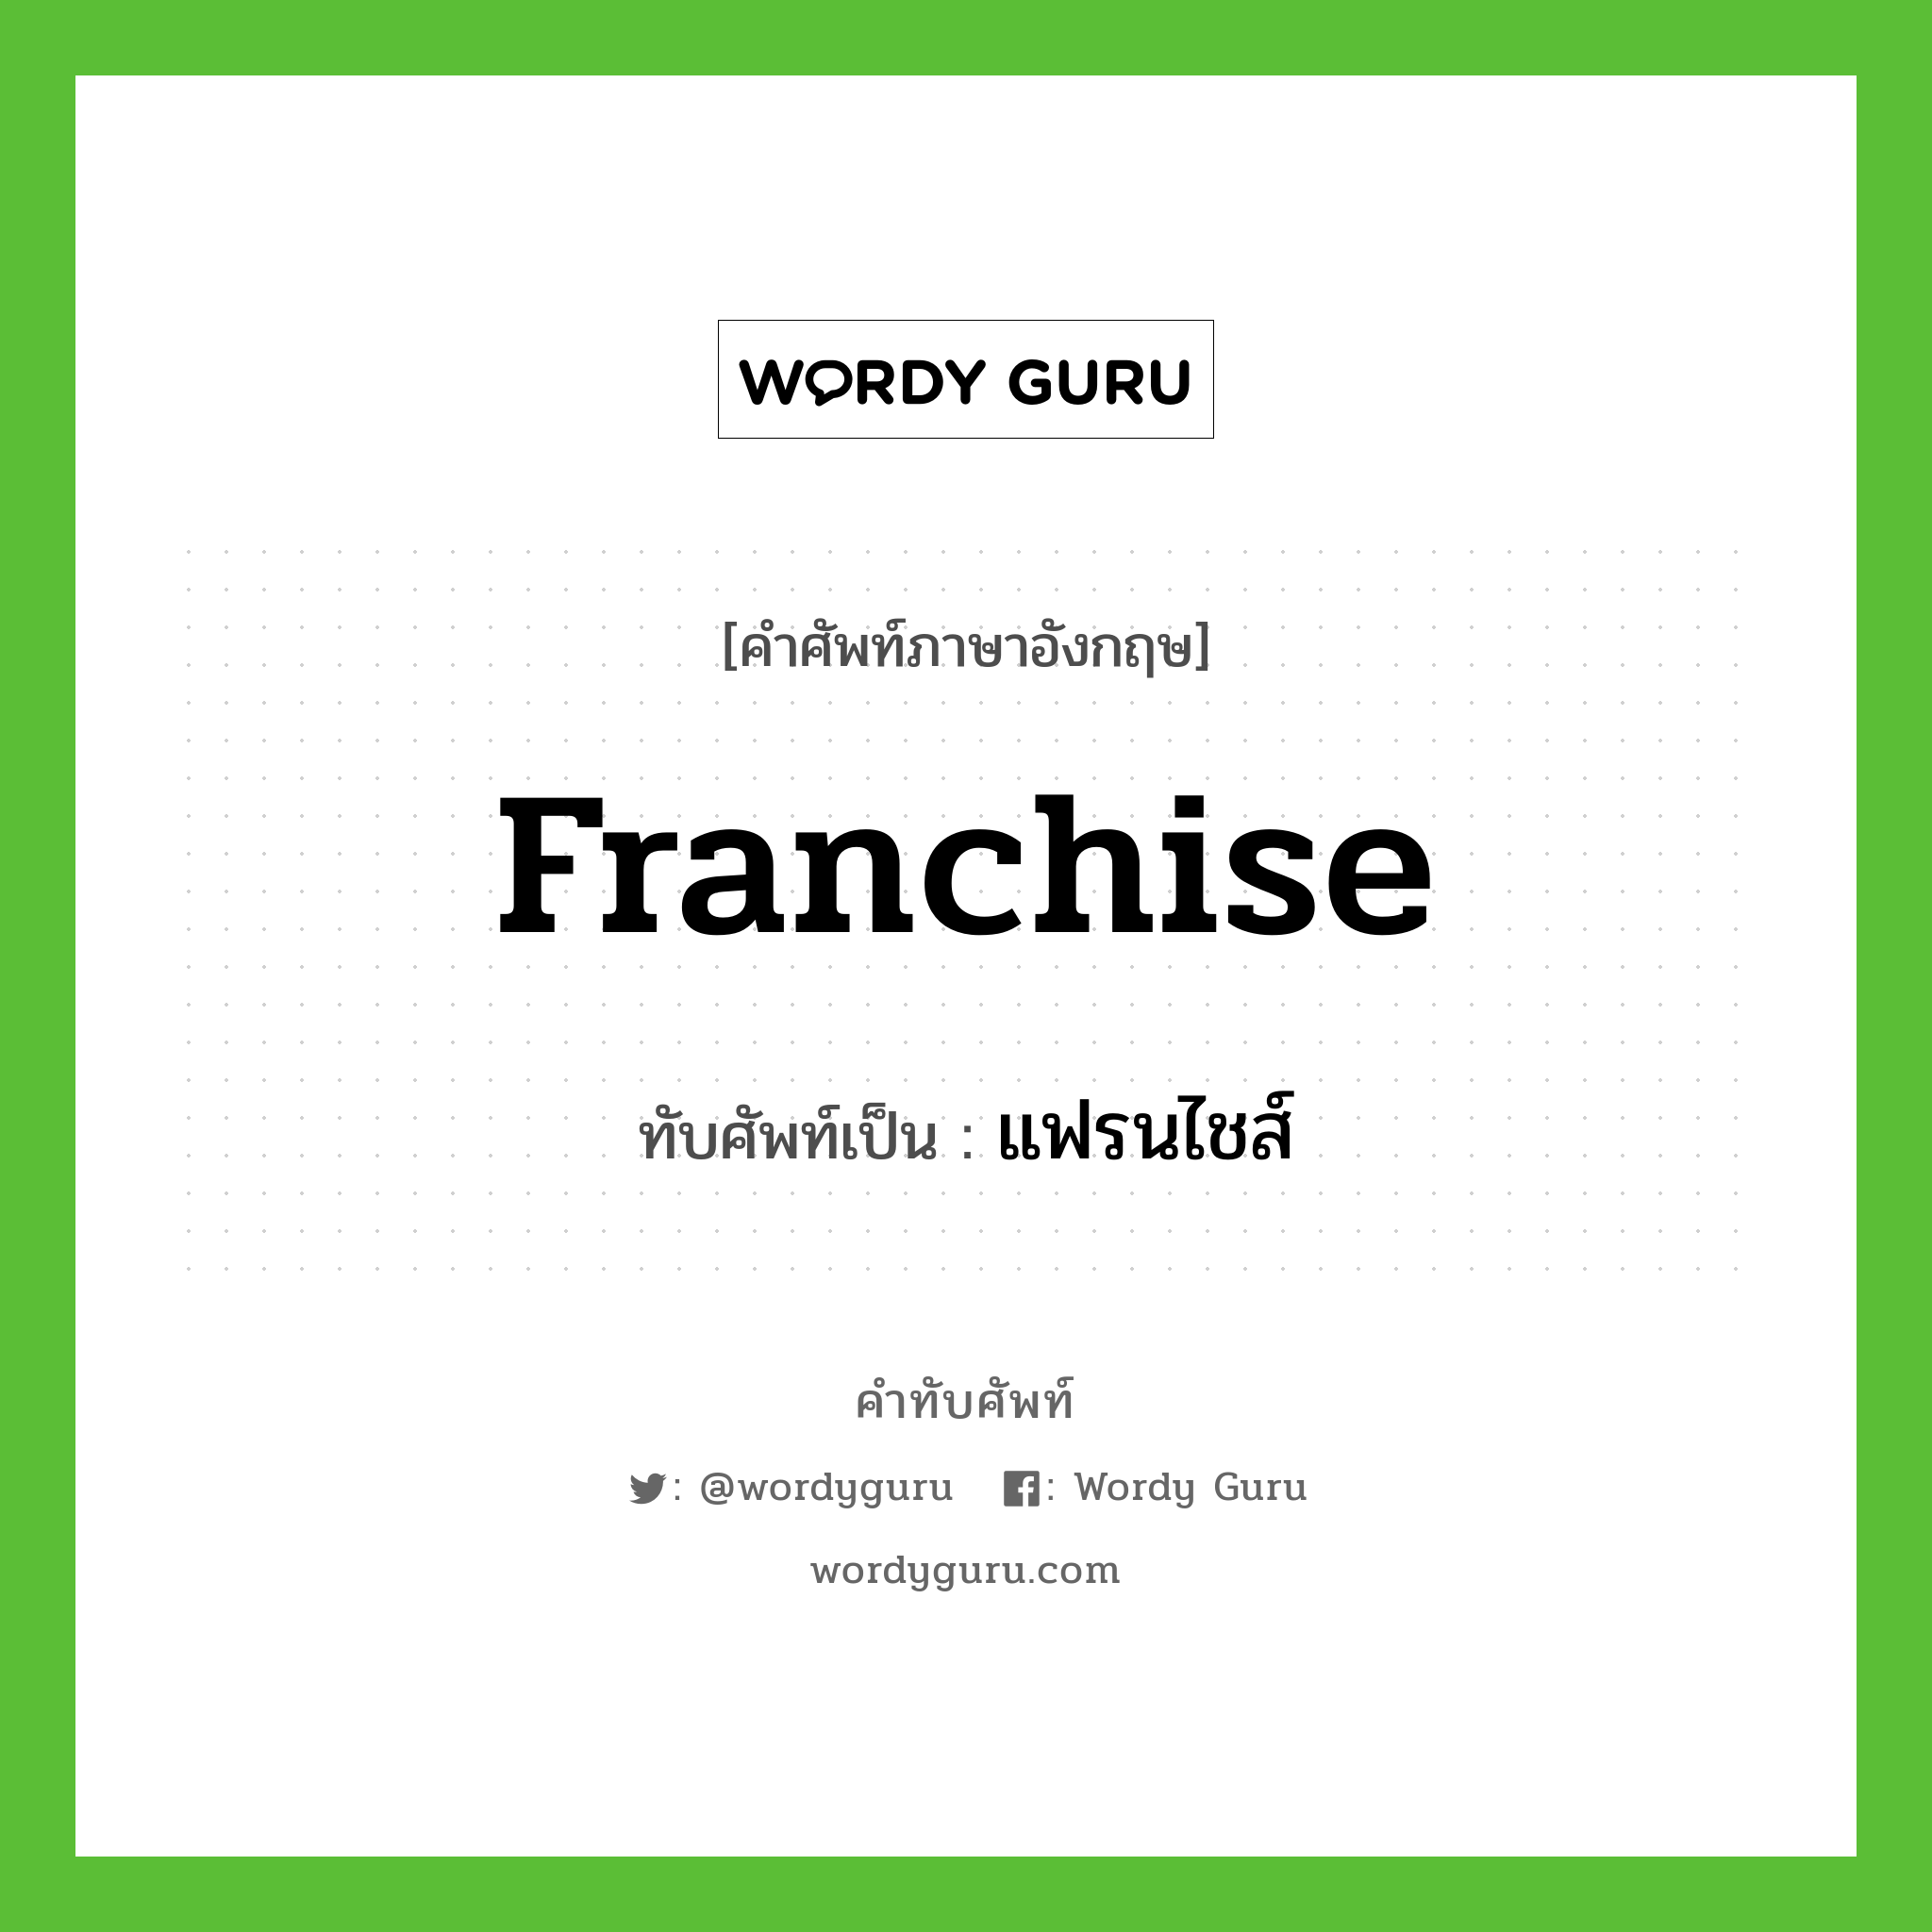 franchise เขียนเป็นคำไทยว่าอะไร?, คำศัพท์ภาษาอังกฤษ franchise ทับศัพท์เป็น แฟรนไชส์